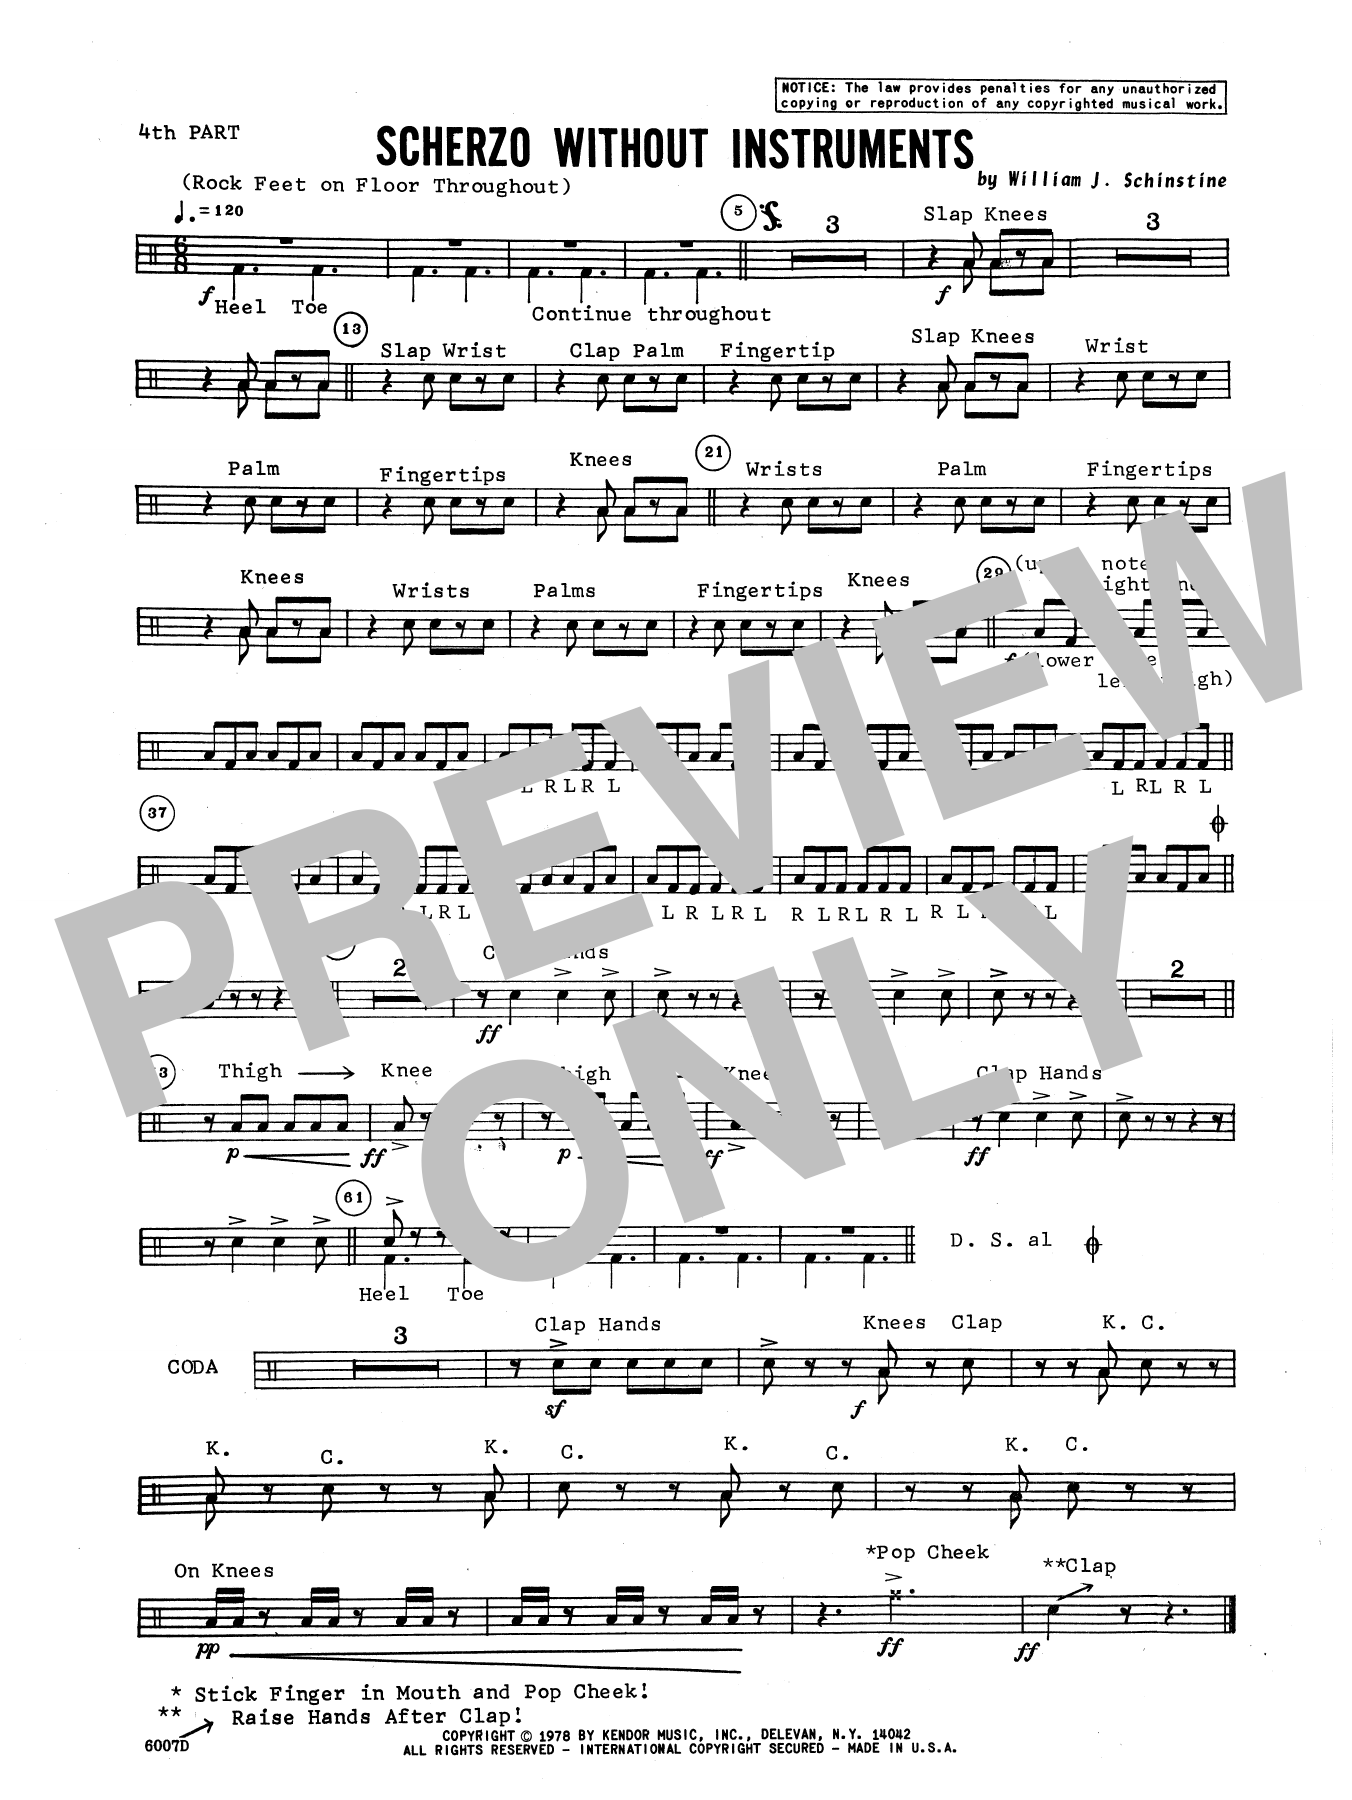 Download William Schinstine Scherzo Without Instruments - Percussio Sheet Music